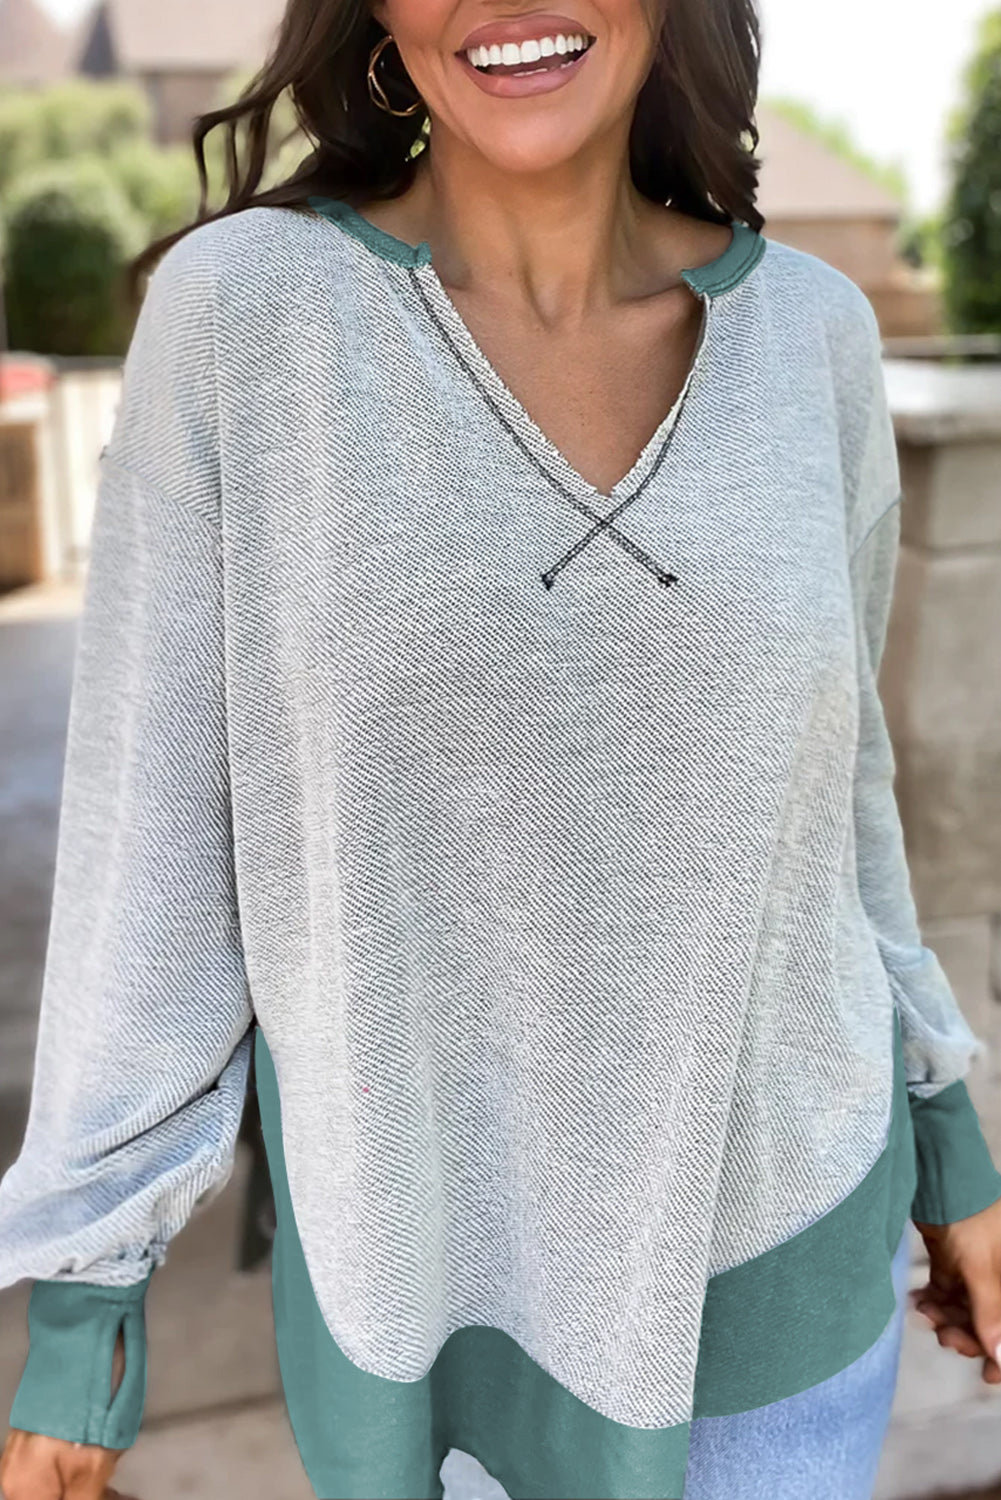 Laurel Green-Sweatshirt mit sichtbaren Nähten und kontrastierendem Rand und gekerbtem Halsausschnitt